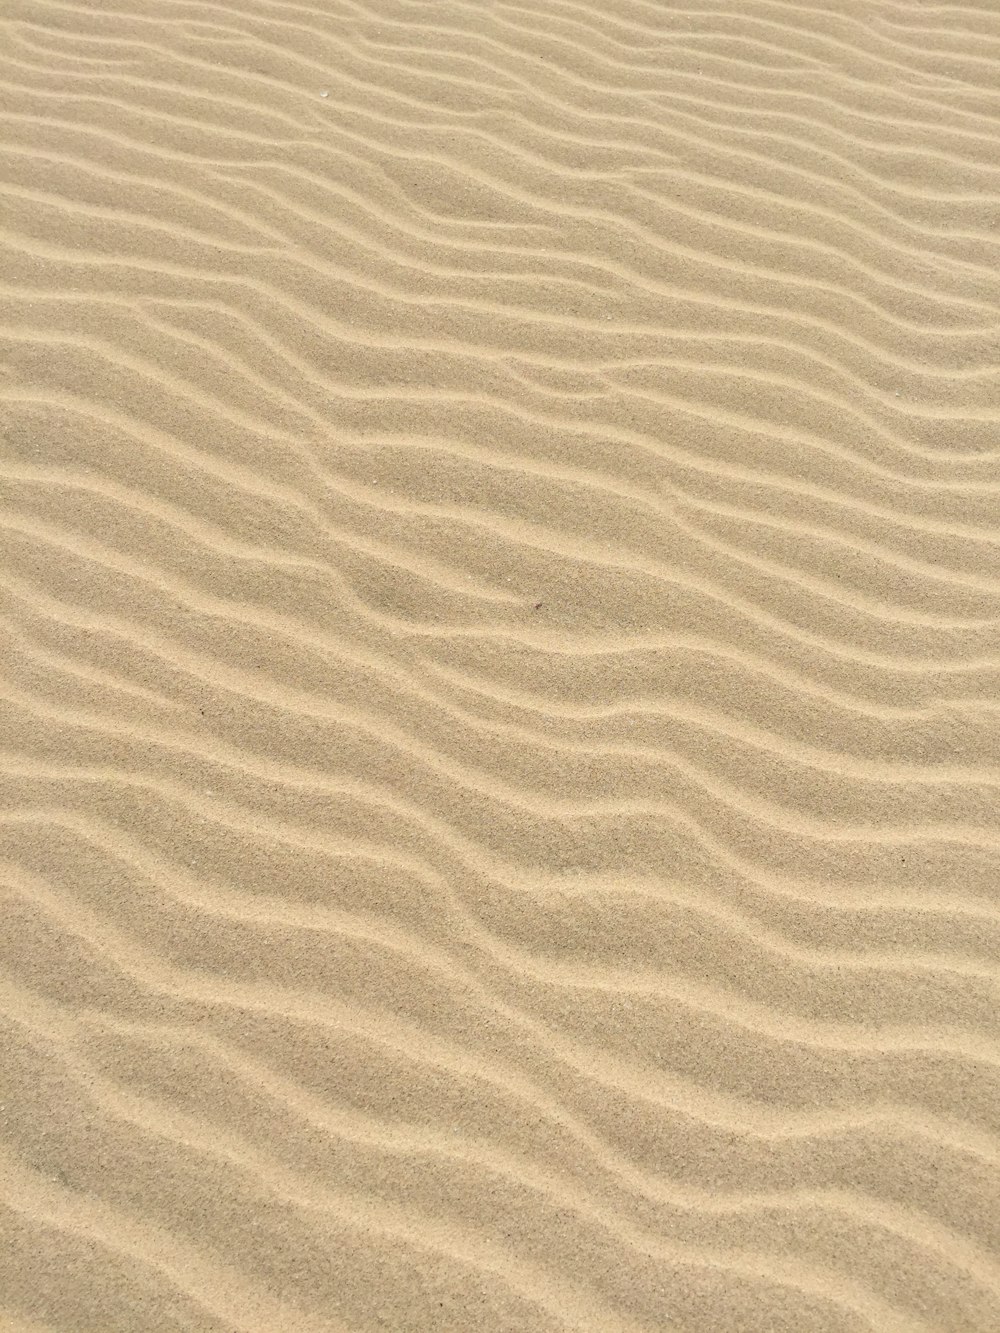 areias marrons